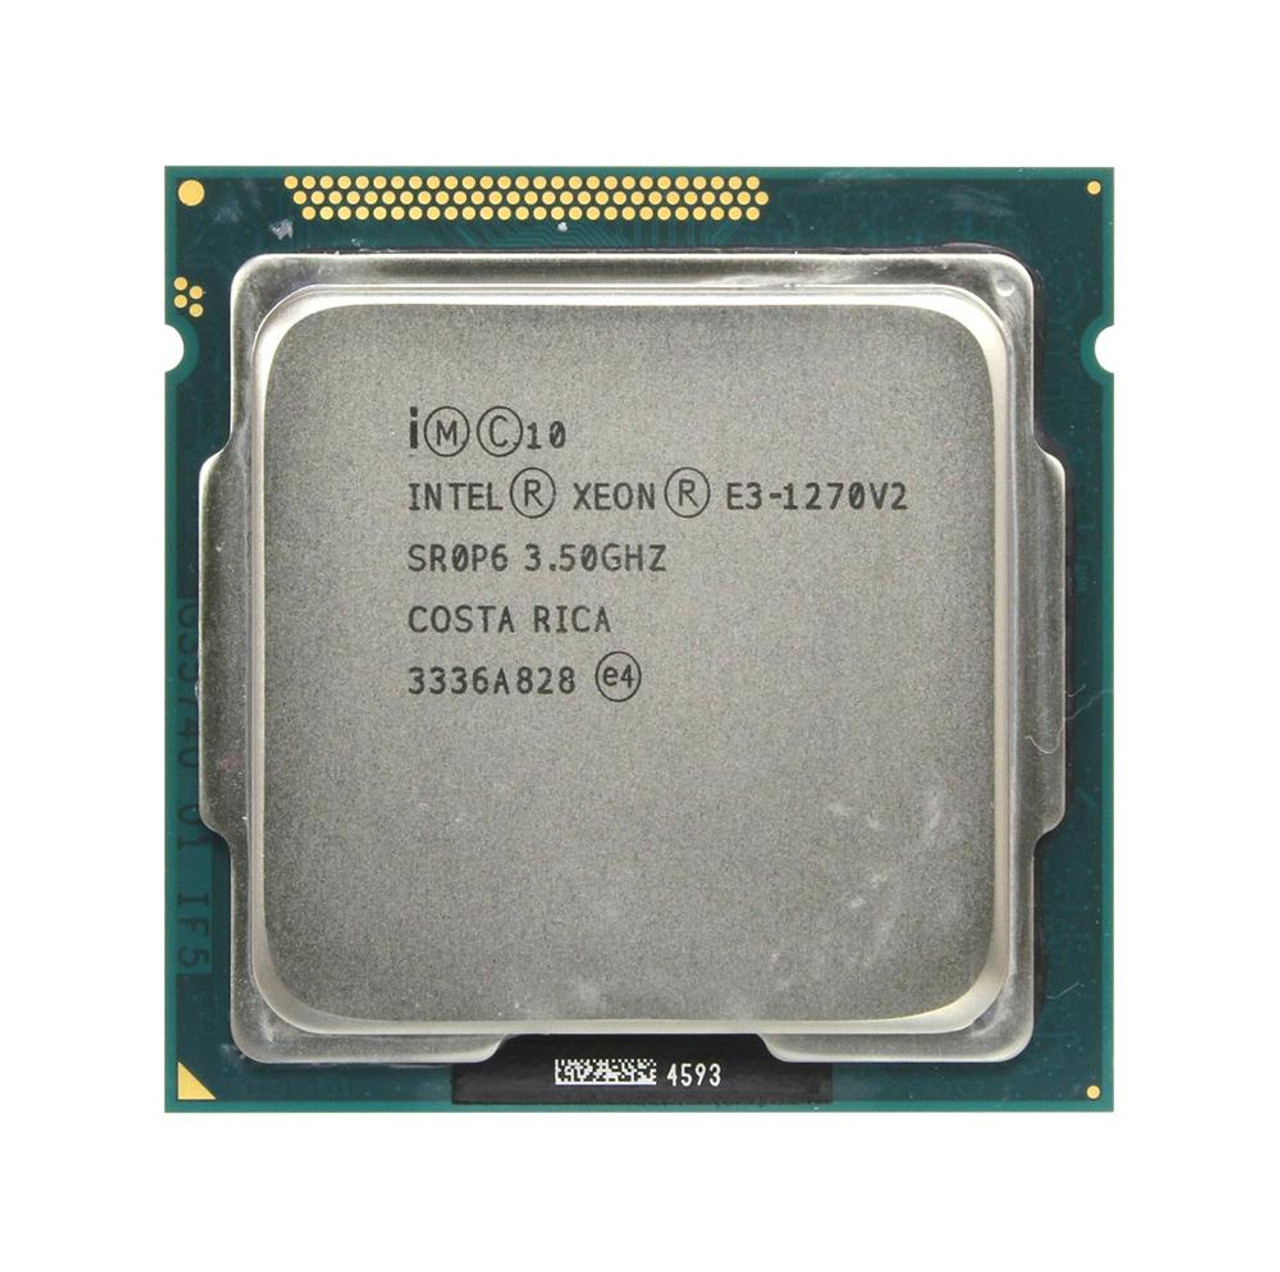 SR0P6 Intel Xeon E3-1270 v2 Quad-Core 3.50GHz 5.00GT/s DMI 8MB L3 Cache Socket FCLGA1155 Processor